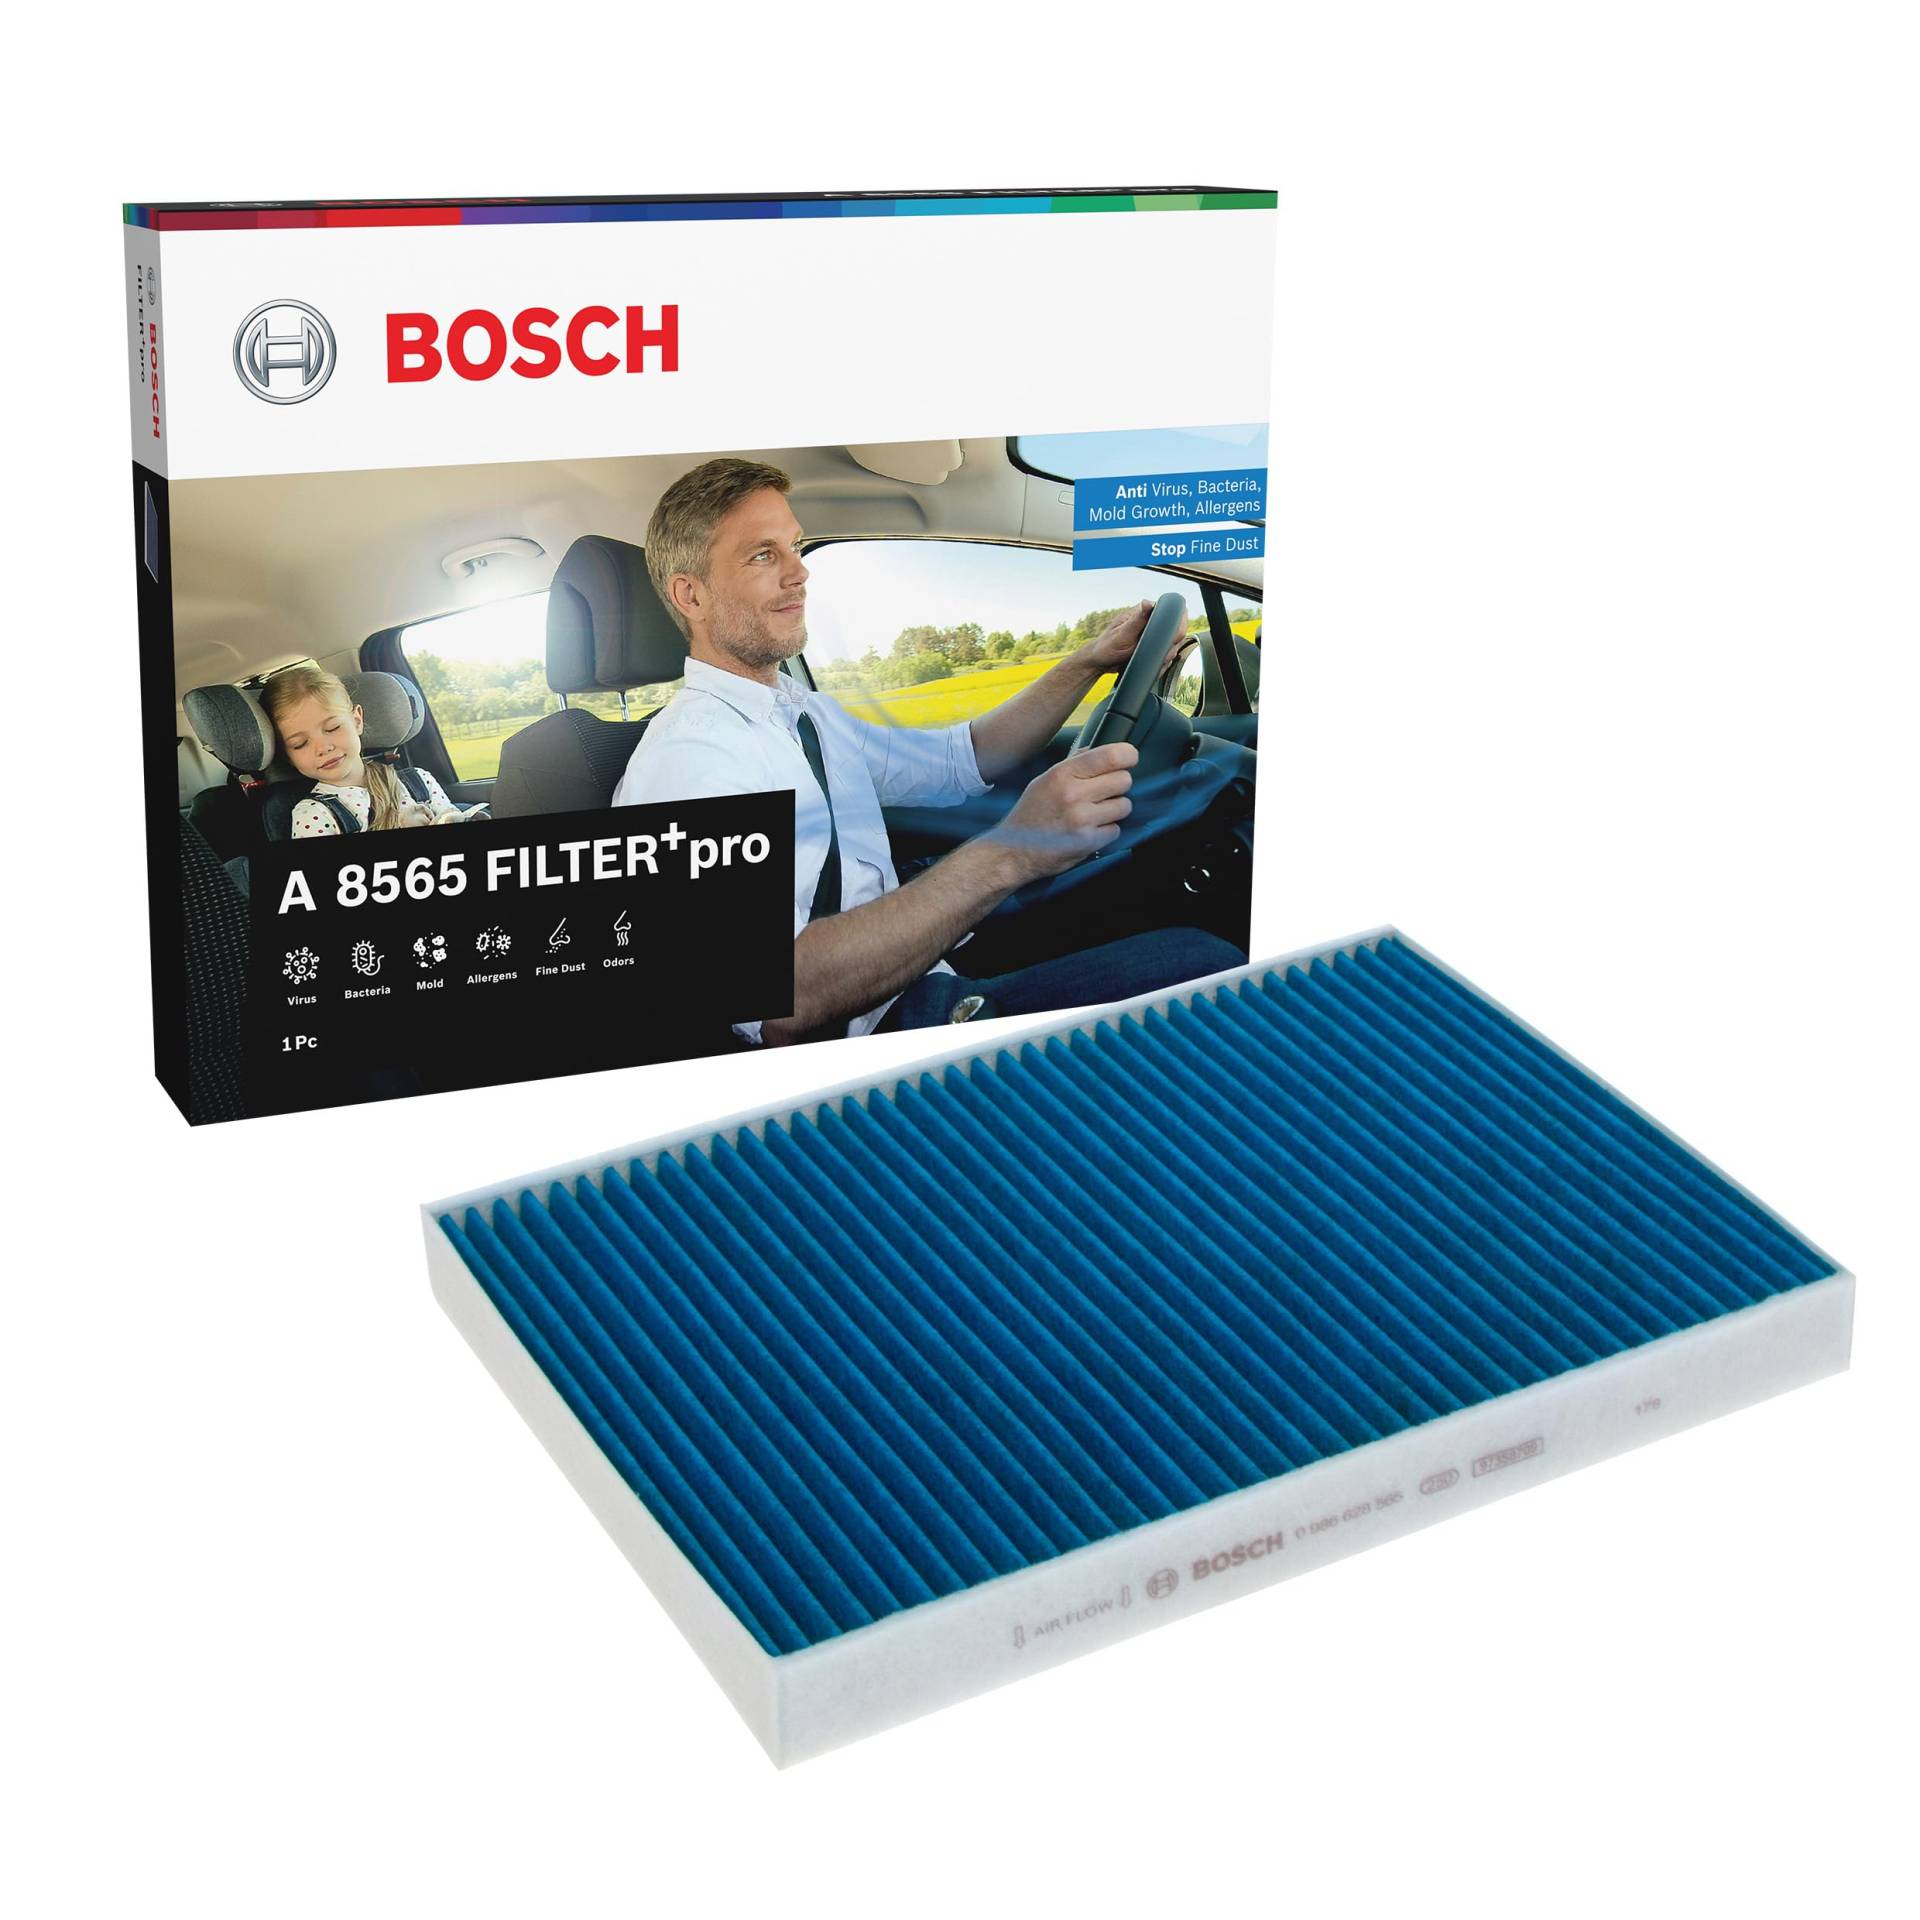 Bosch A8565 - Innenraumfilter FILTER+pro antibakteriell, wirksam gegen übel riechende Gase, Viren, Schimmel, Feinstaub und Allergene von Bosch Automotive